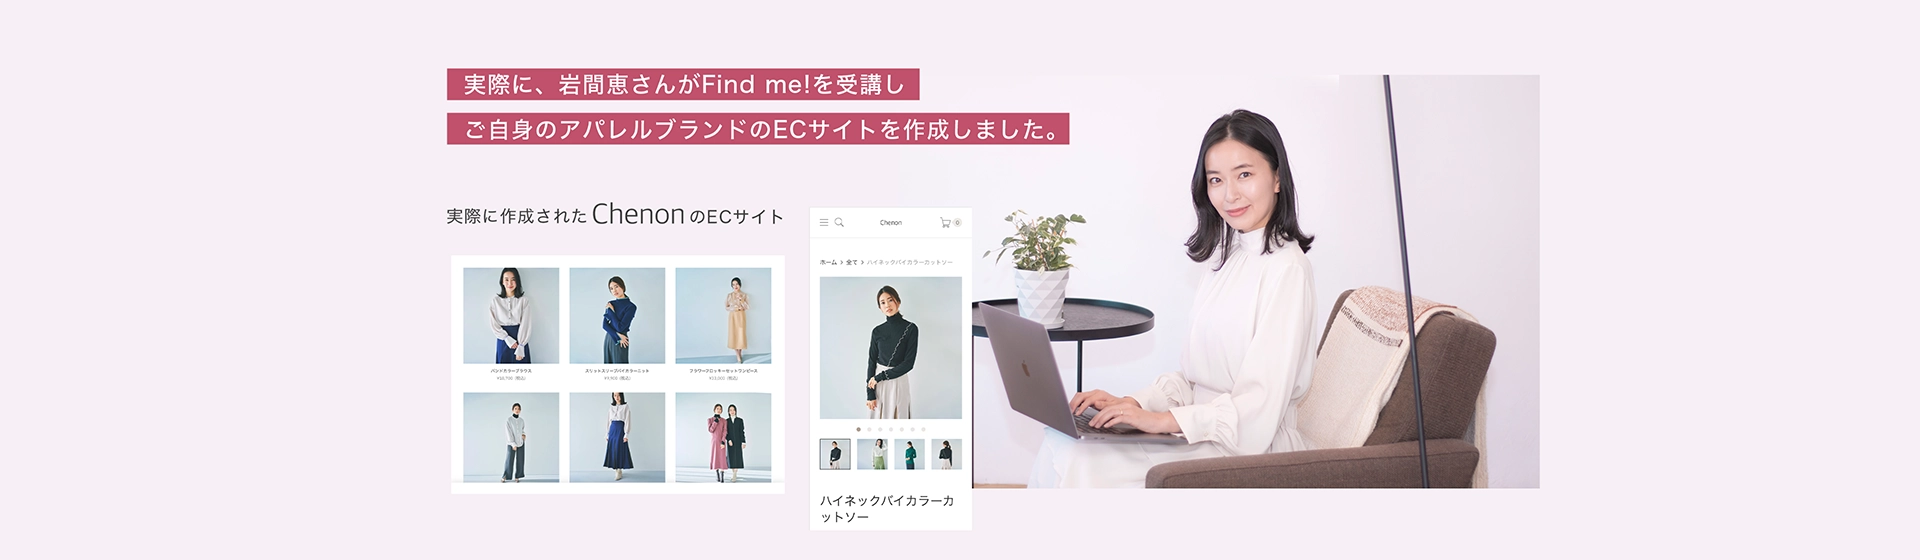 実際に、岩間恵さんがFind me!を受講しご自身のアパレルブランドのECサイトを作成しました。